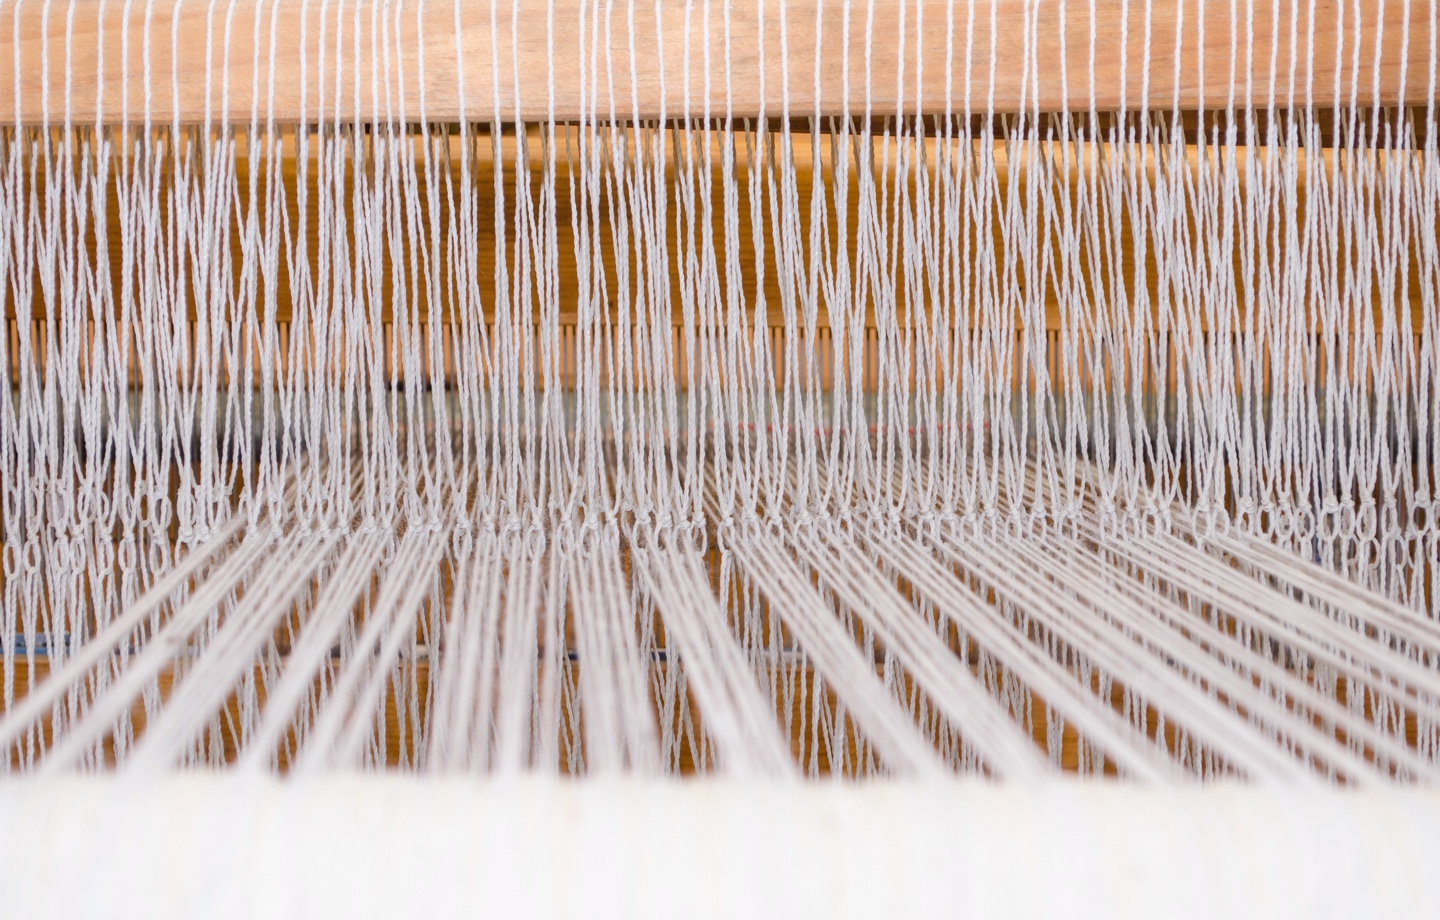 Threads On A Loom Header